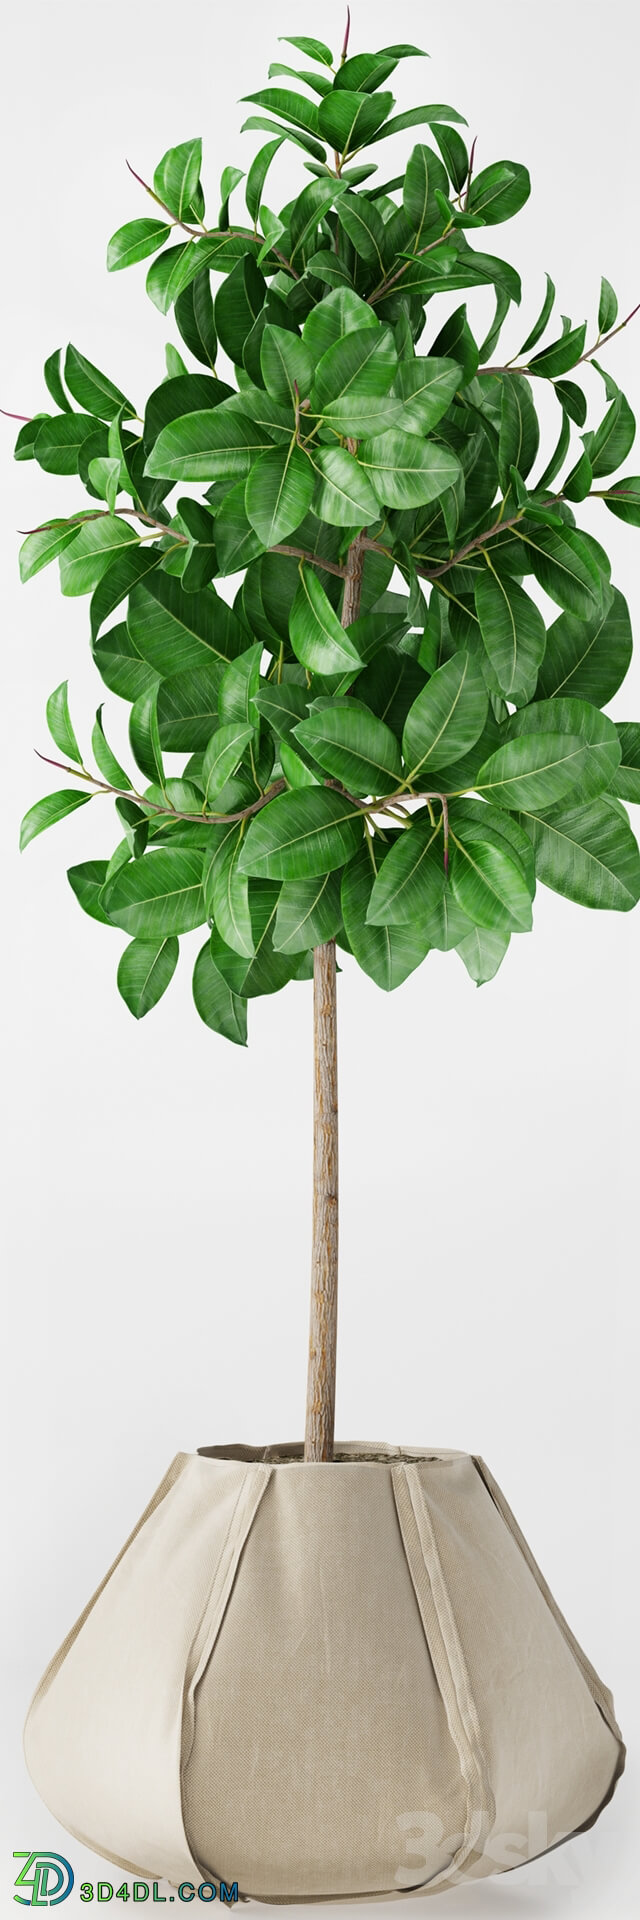 Plant - Ficus Elastica